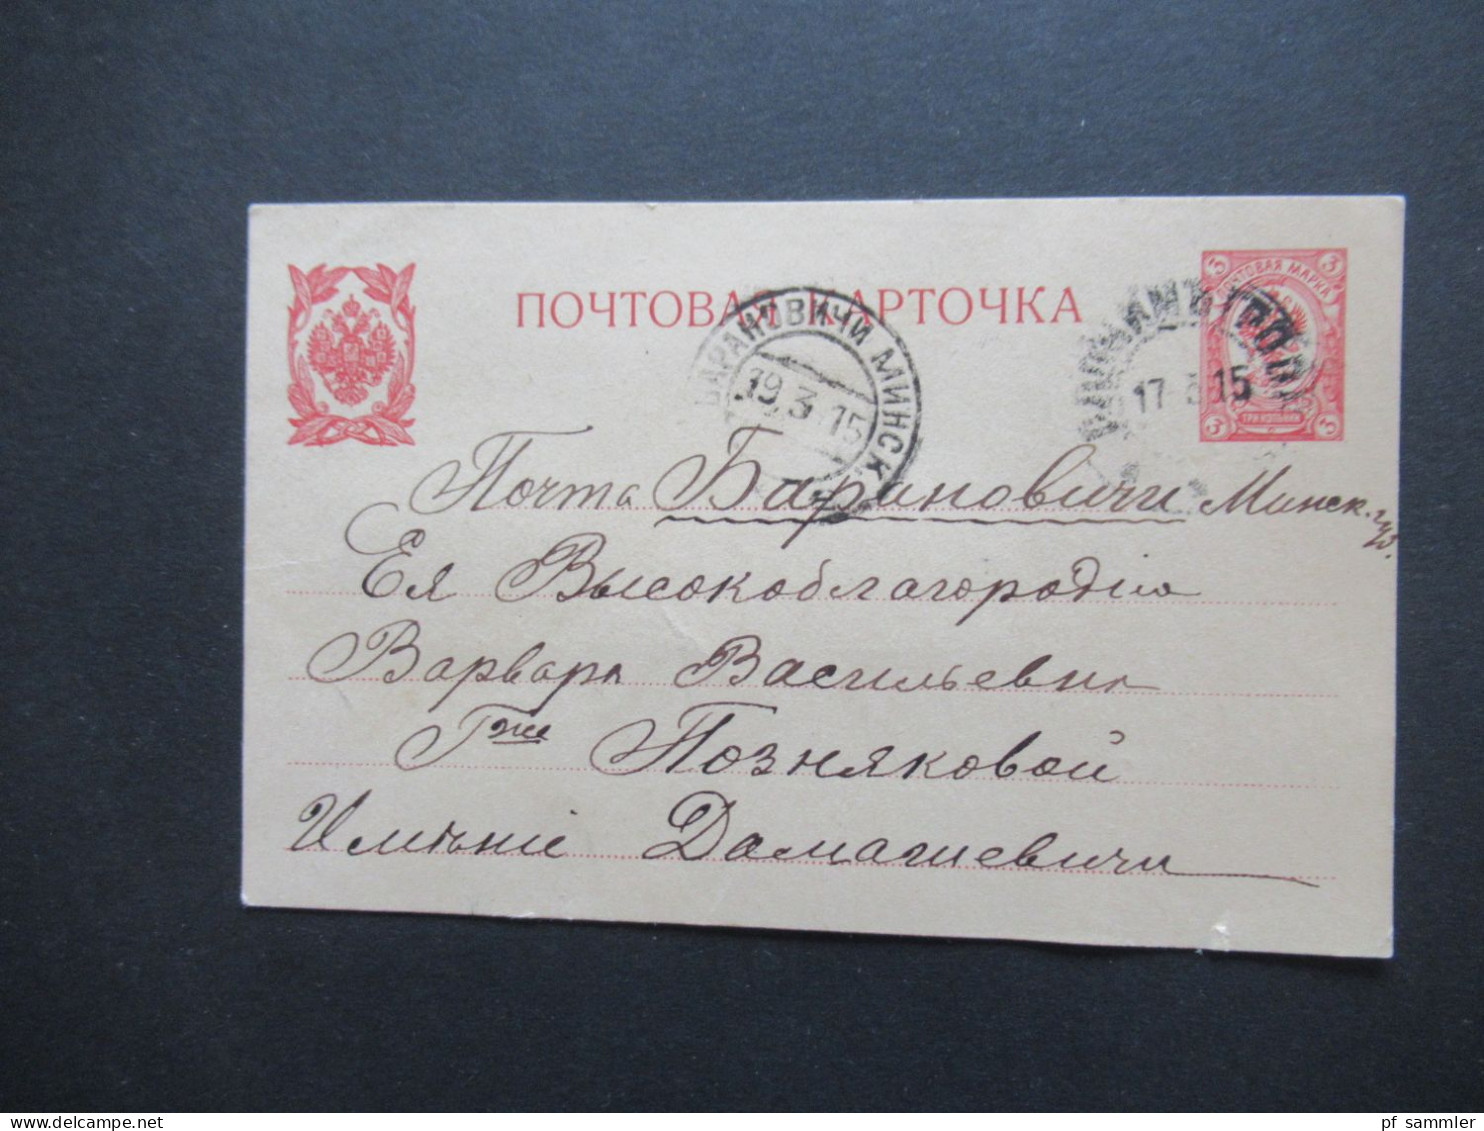 Russland Ganzsachen Posten mit PK und Umschlägen ab ca. 1870er Jahre! Interessanter Posten! 10 Stück